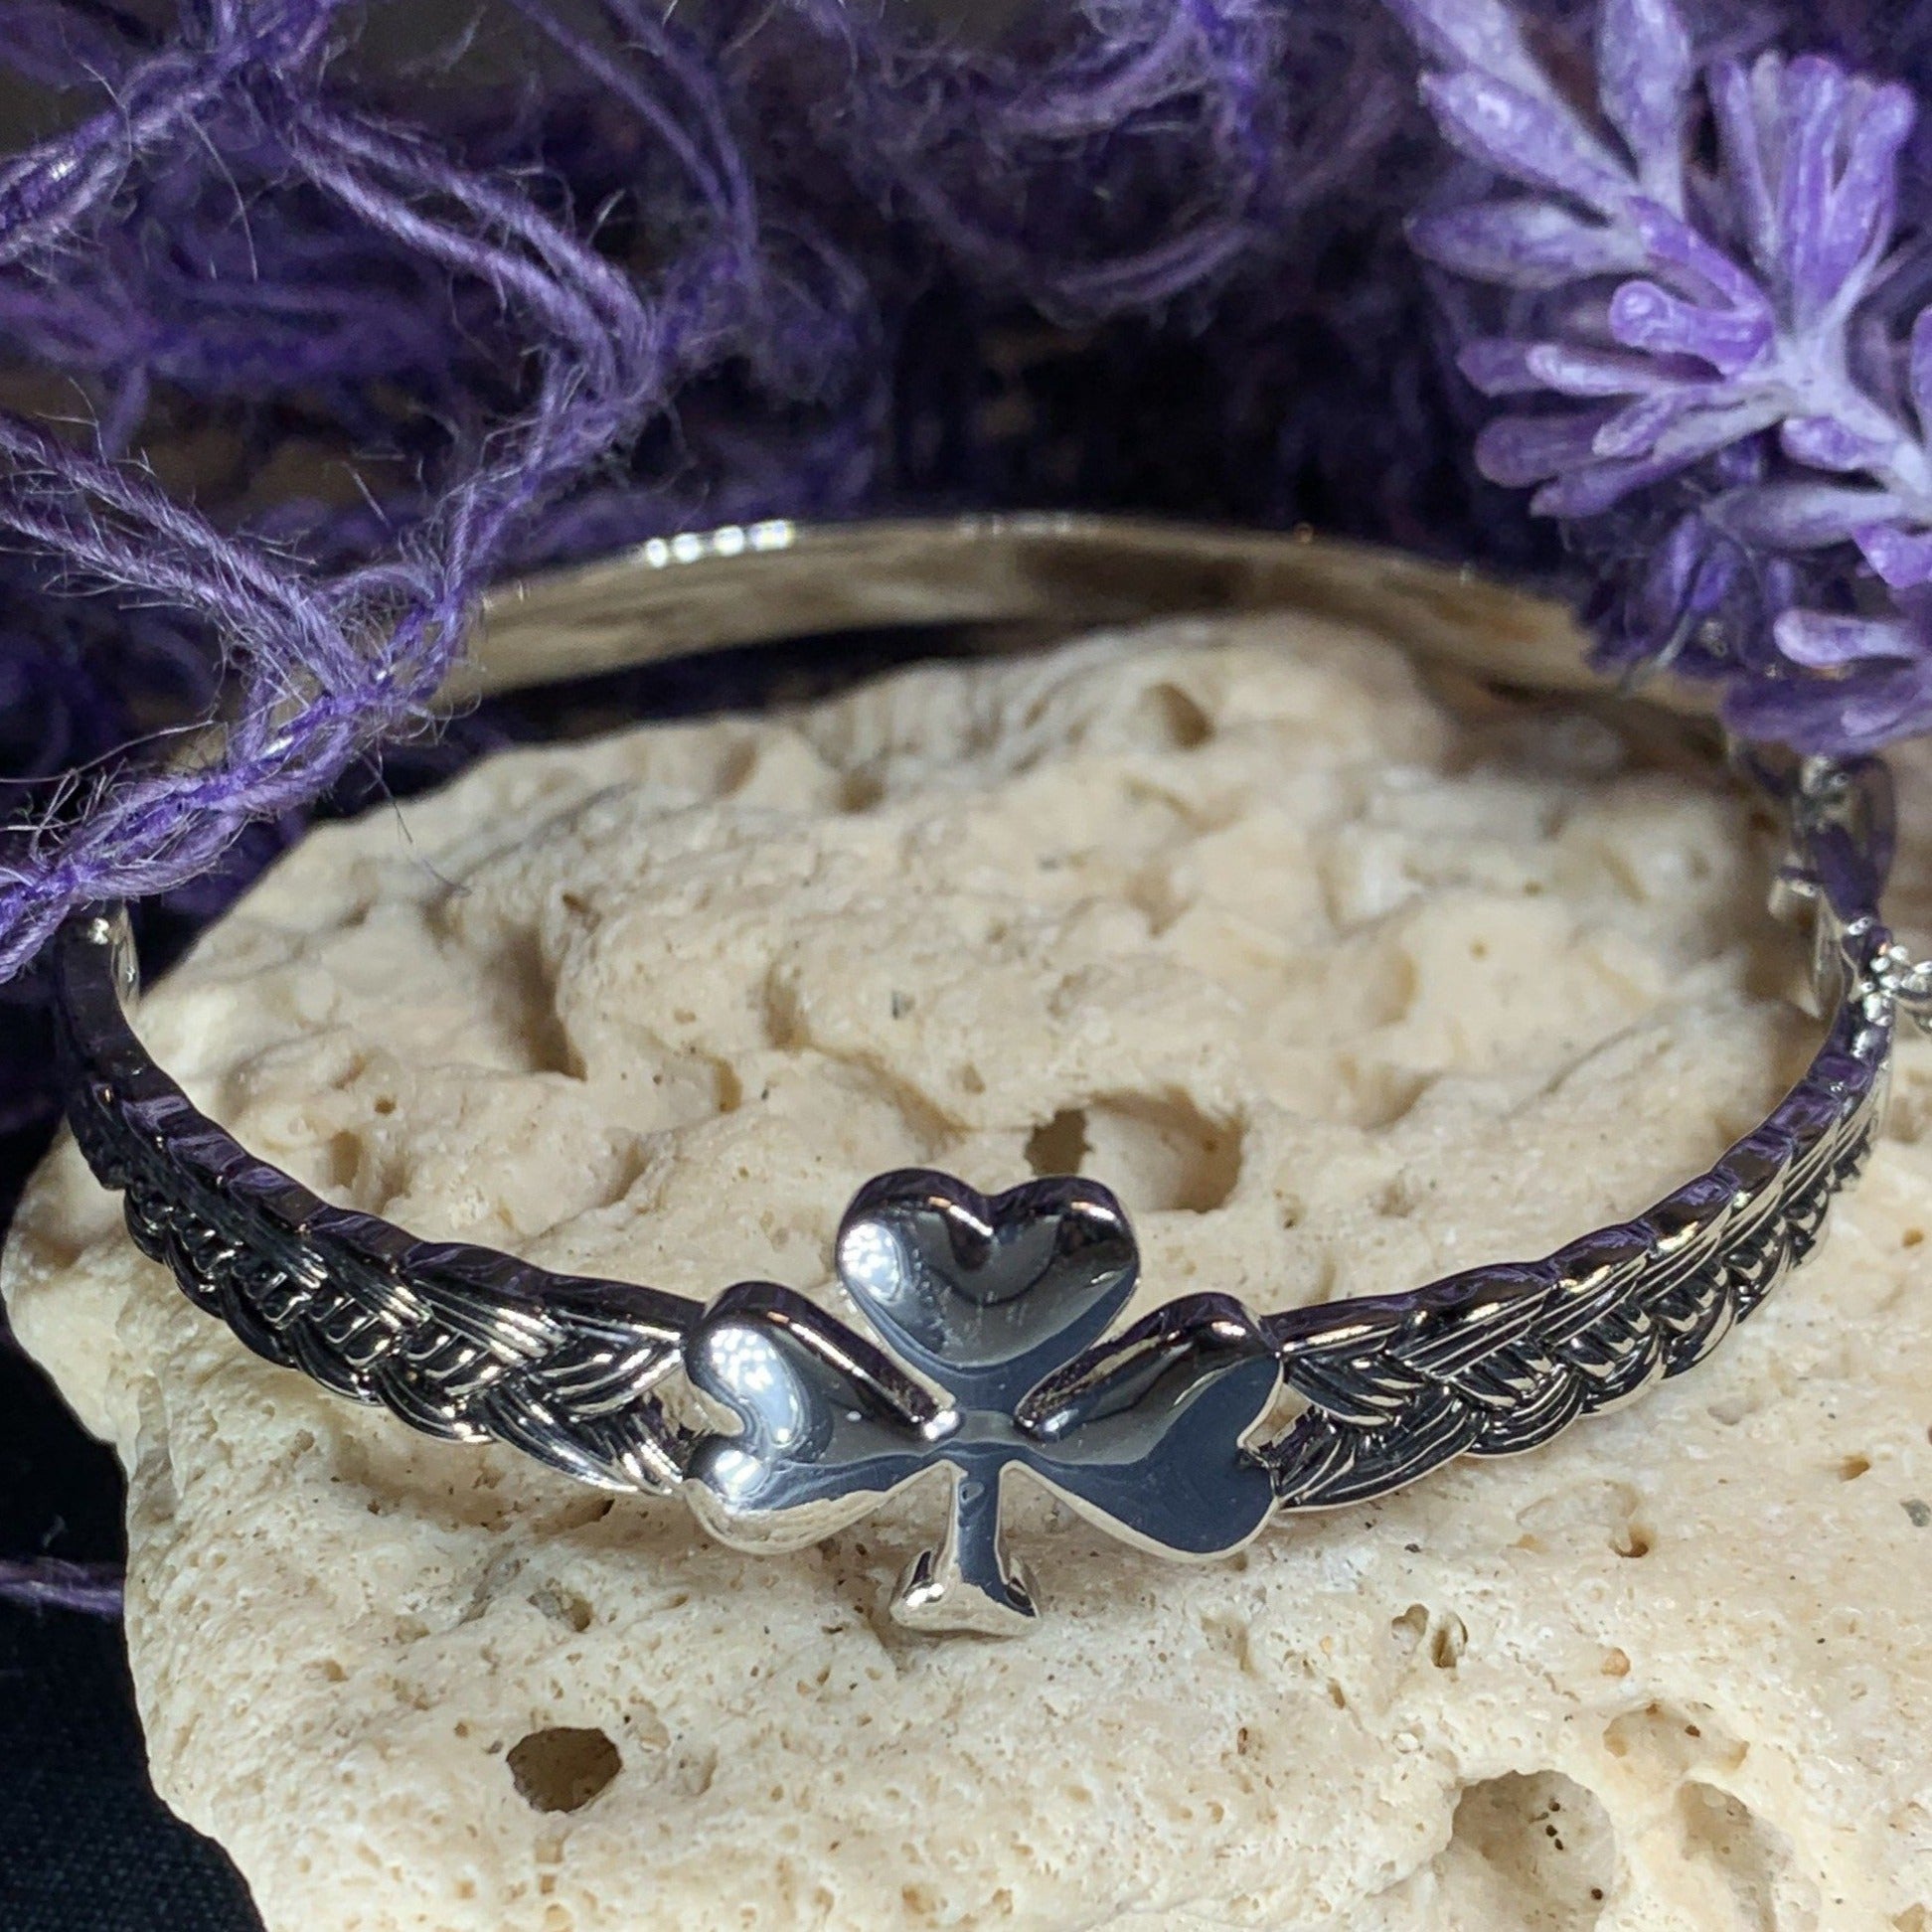 Four Leaf Clover Bracelet - Shamrock Bracelet - Irish Bracelet - Clover  Bracelet - Irish Gifts Gallery